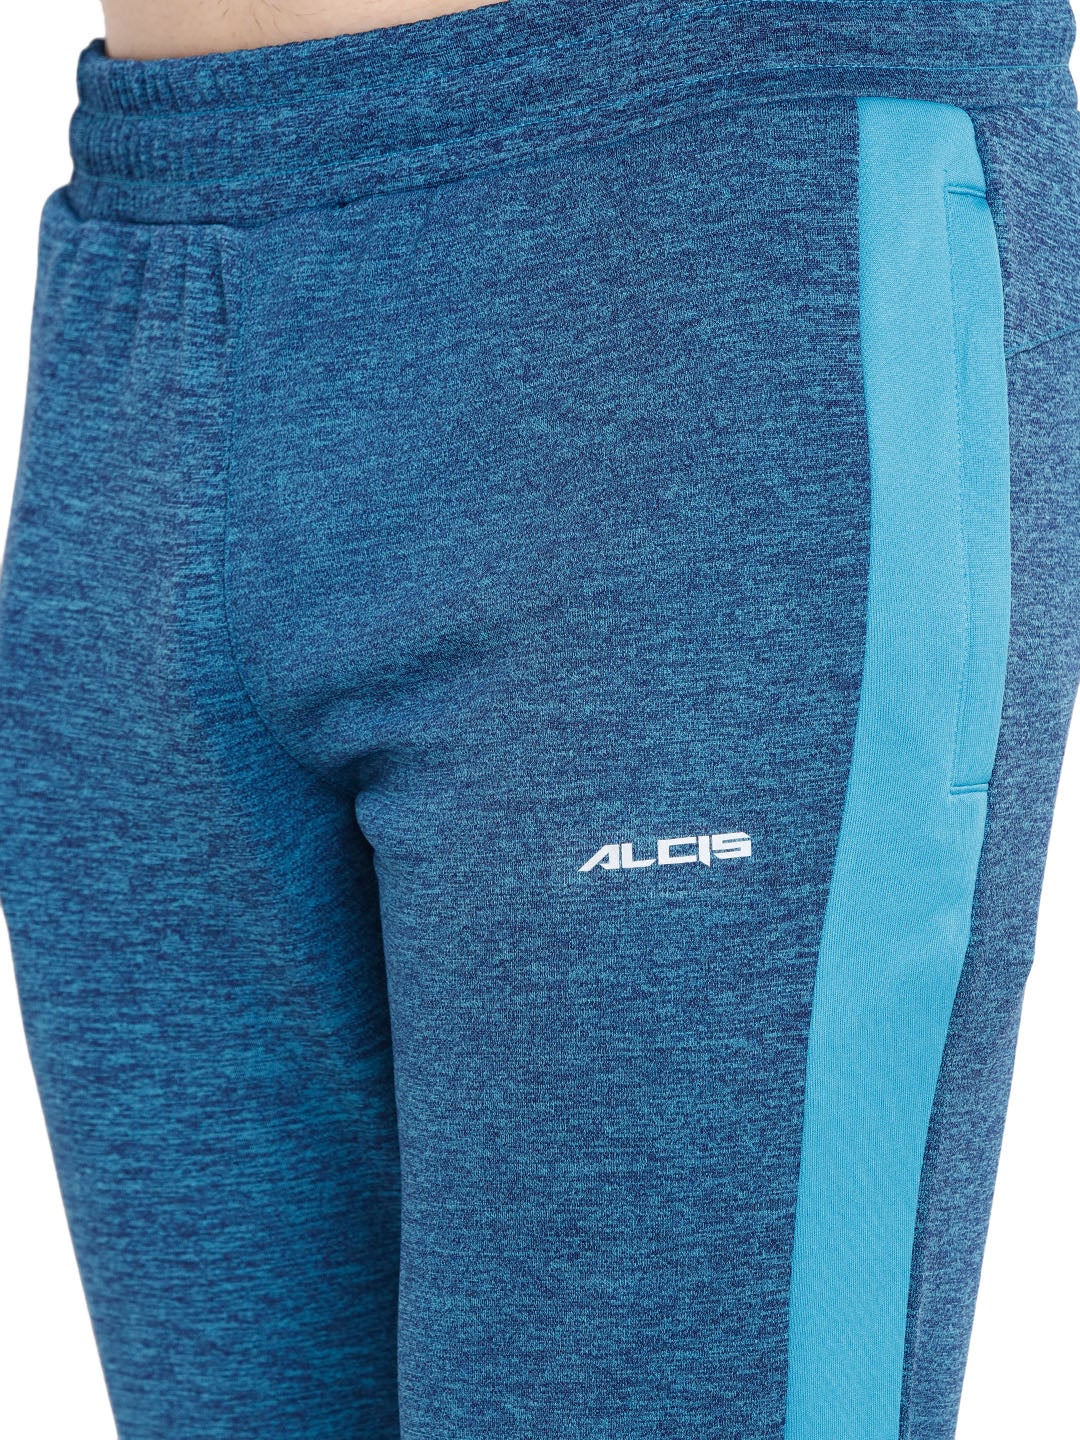 Alcis Men Solid Blue Track Suit